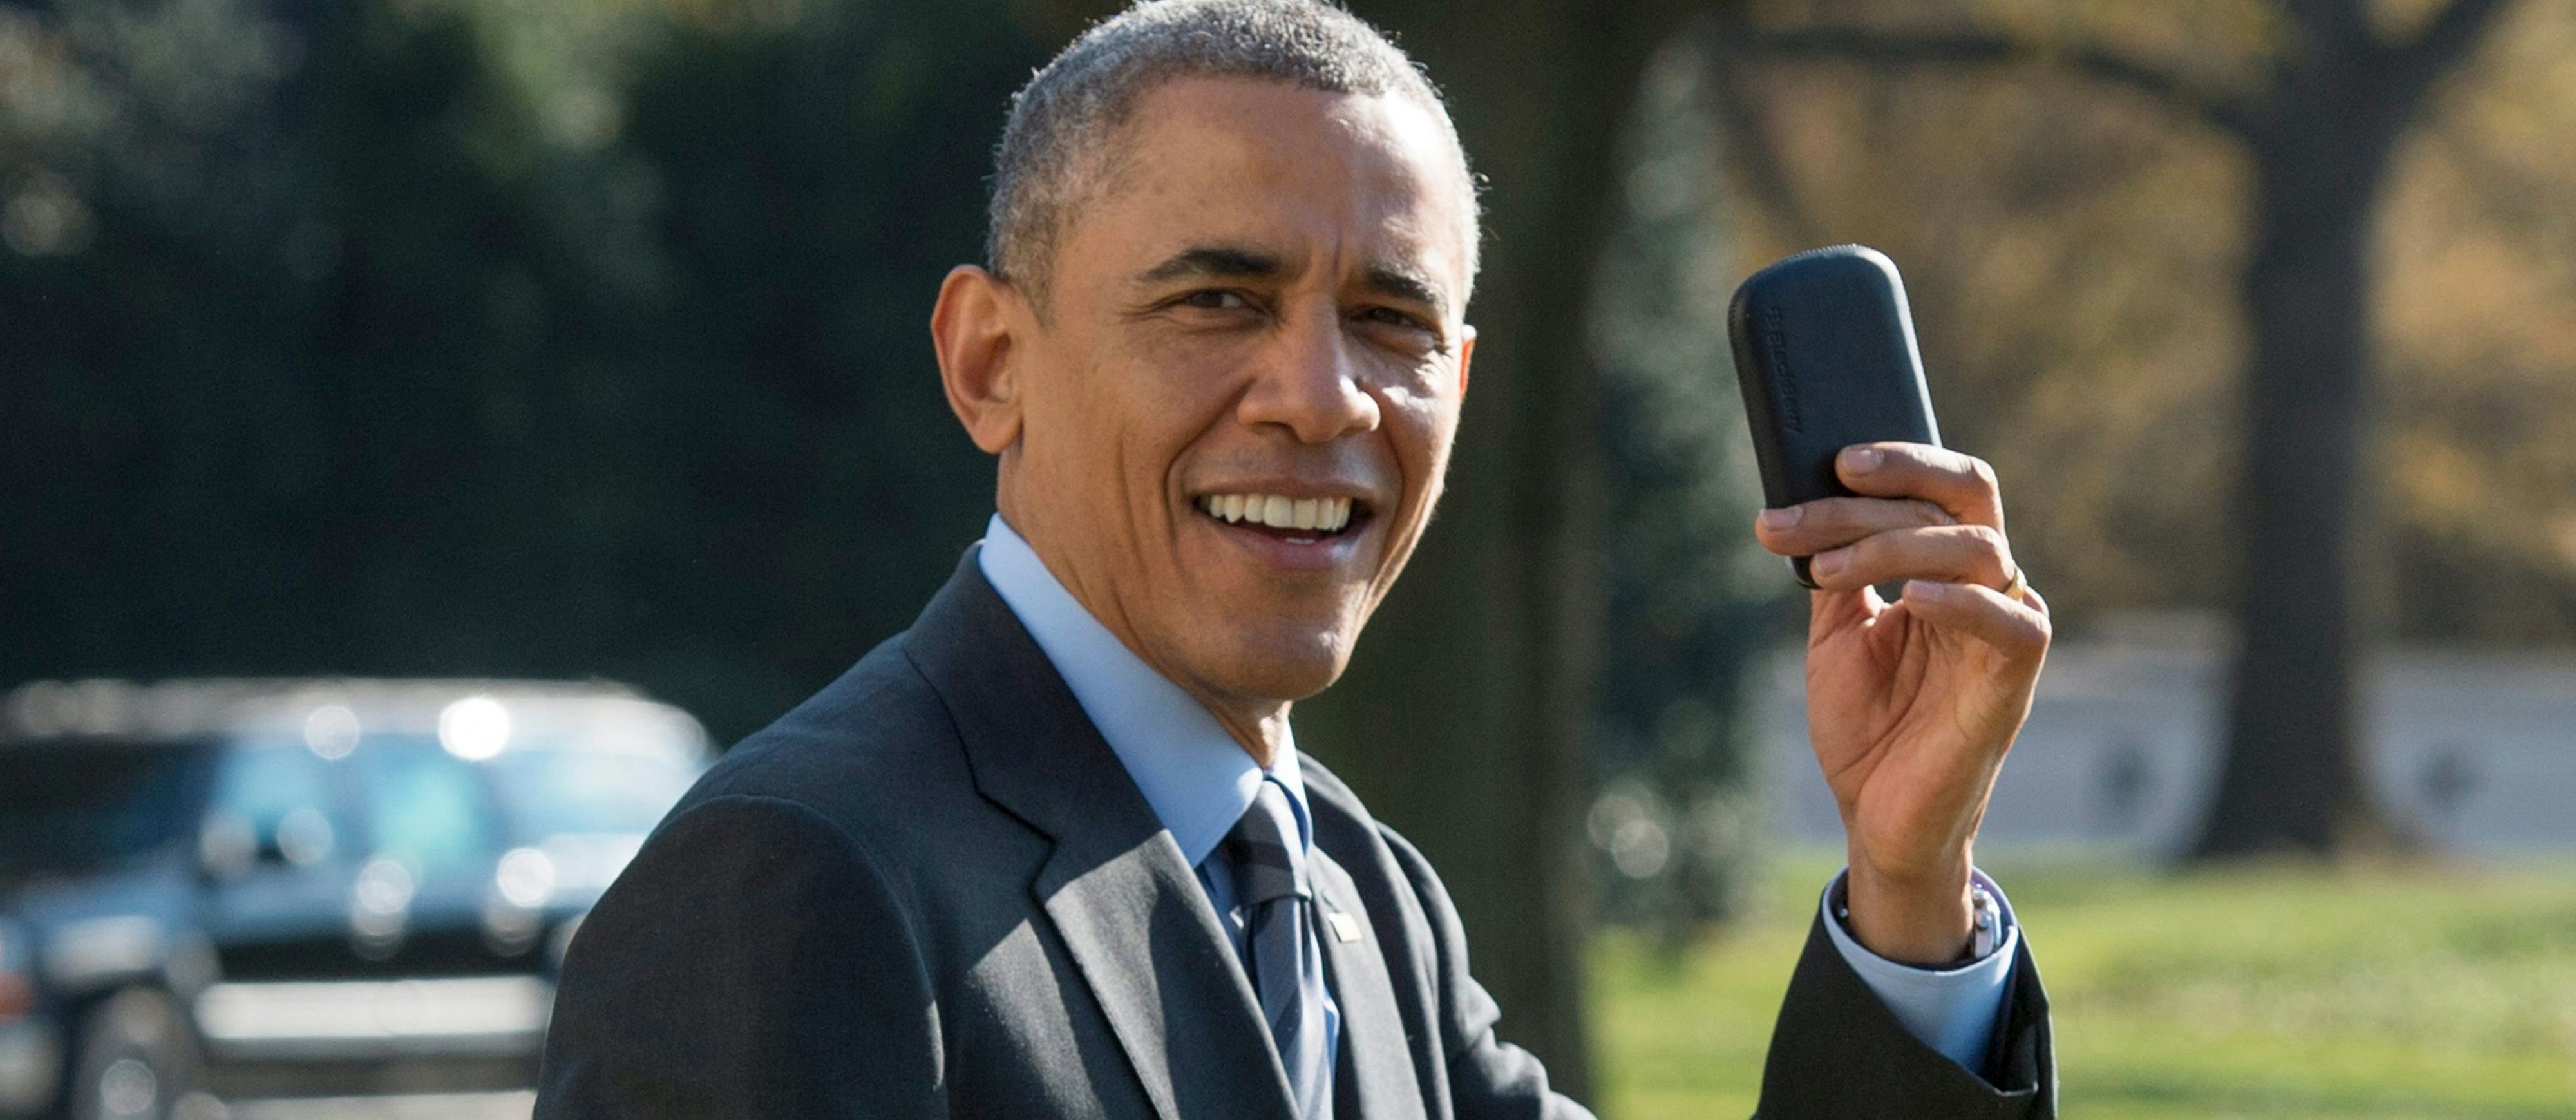 Barack Obama mit seinem BlackBerry im November 2014: Der frühere US-Präsident nutzte das Gerät selbst dann noch, als es längst als technisch veraltet galt – nicht zuletzt wegen der Sicherheits-Features, die der BlackBerry zuließ